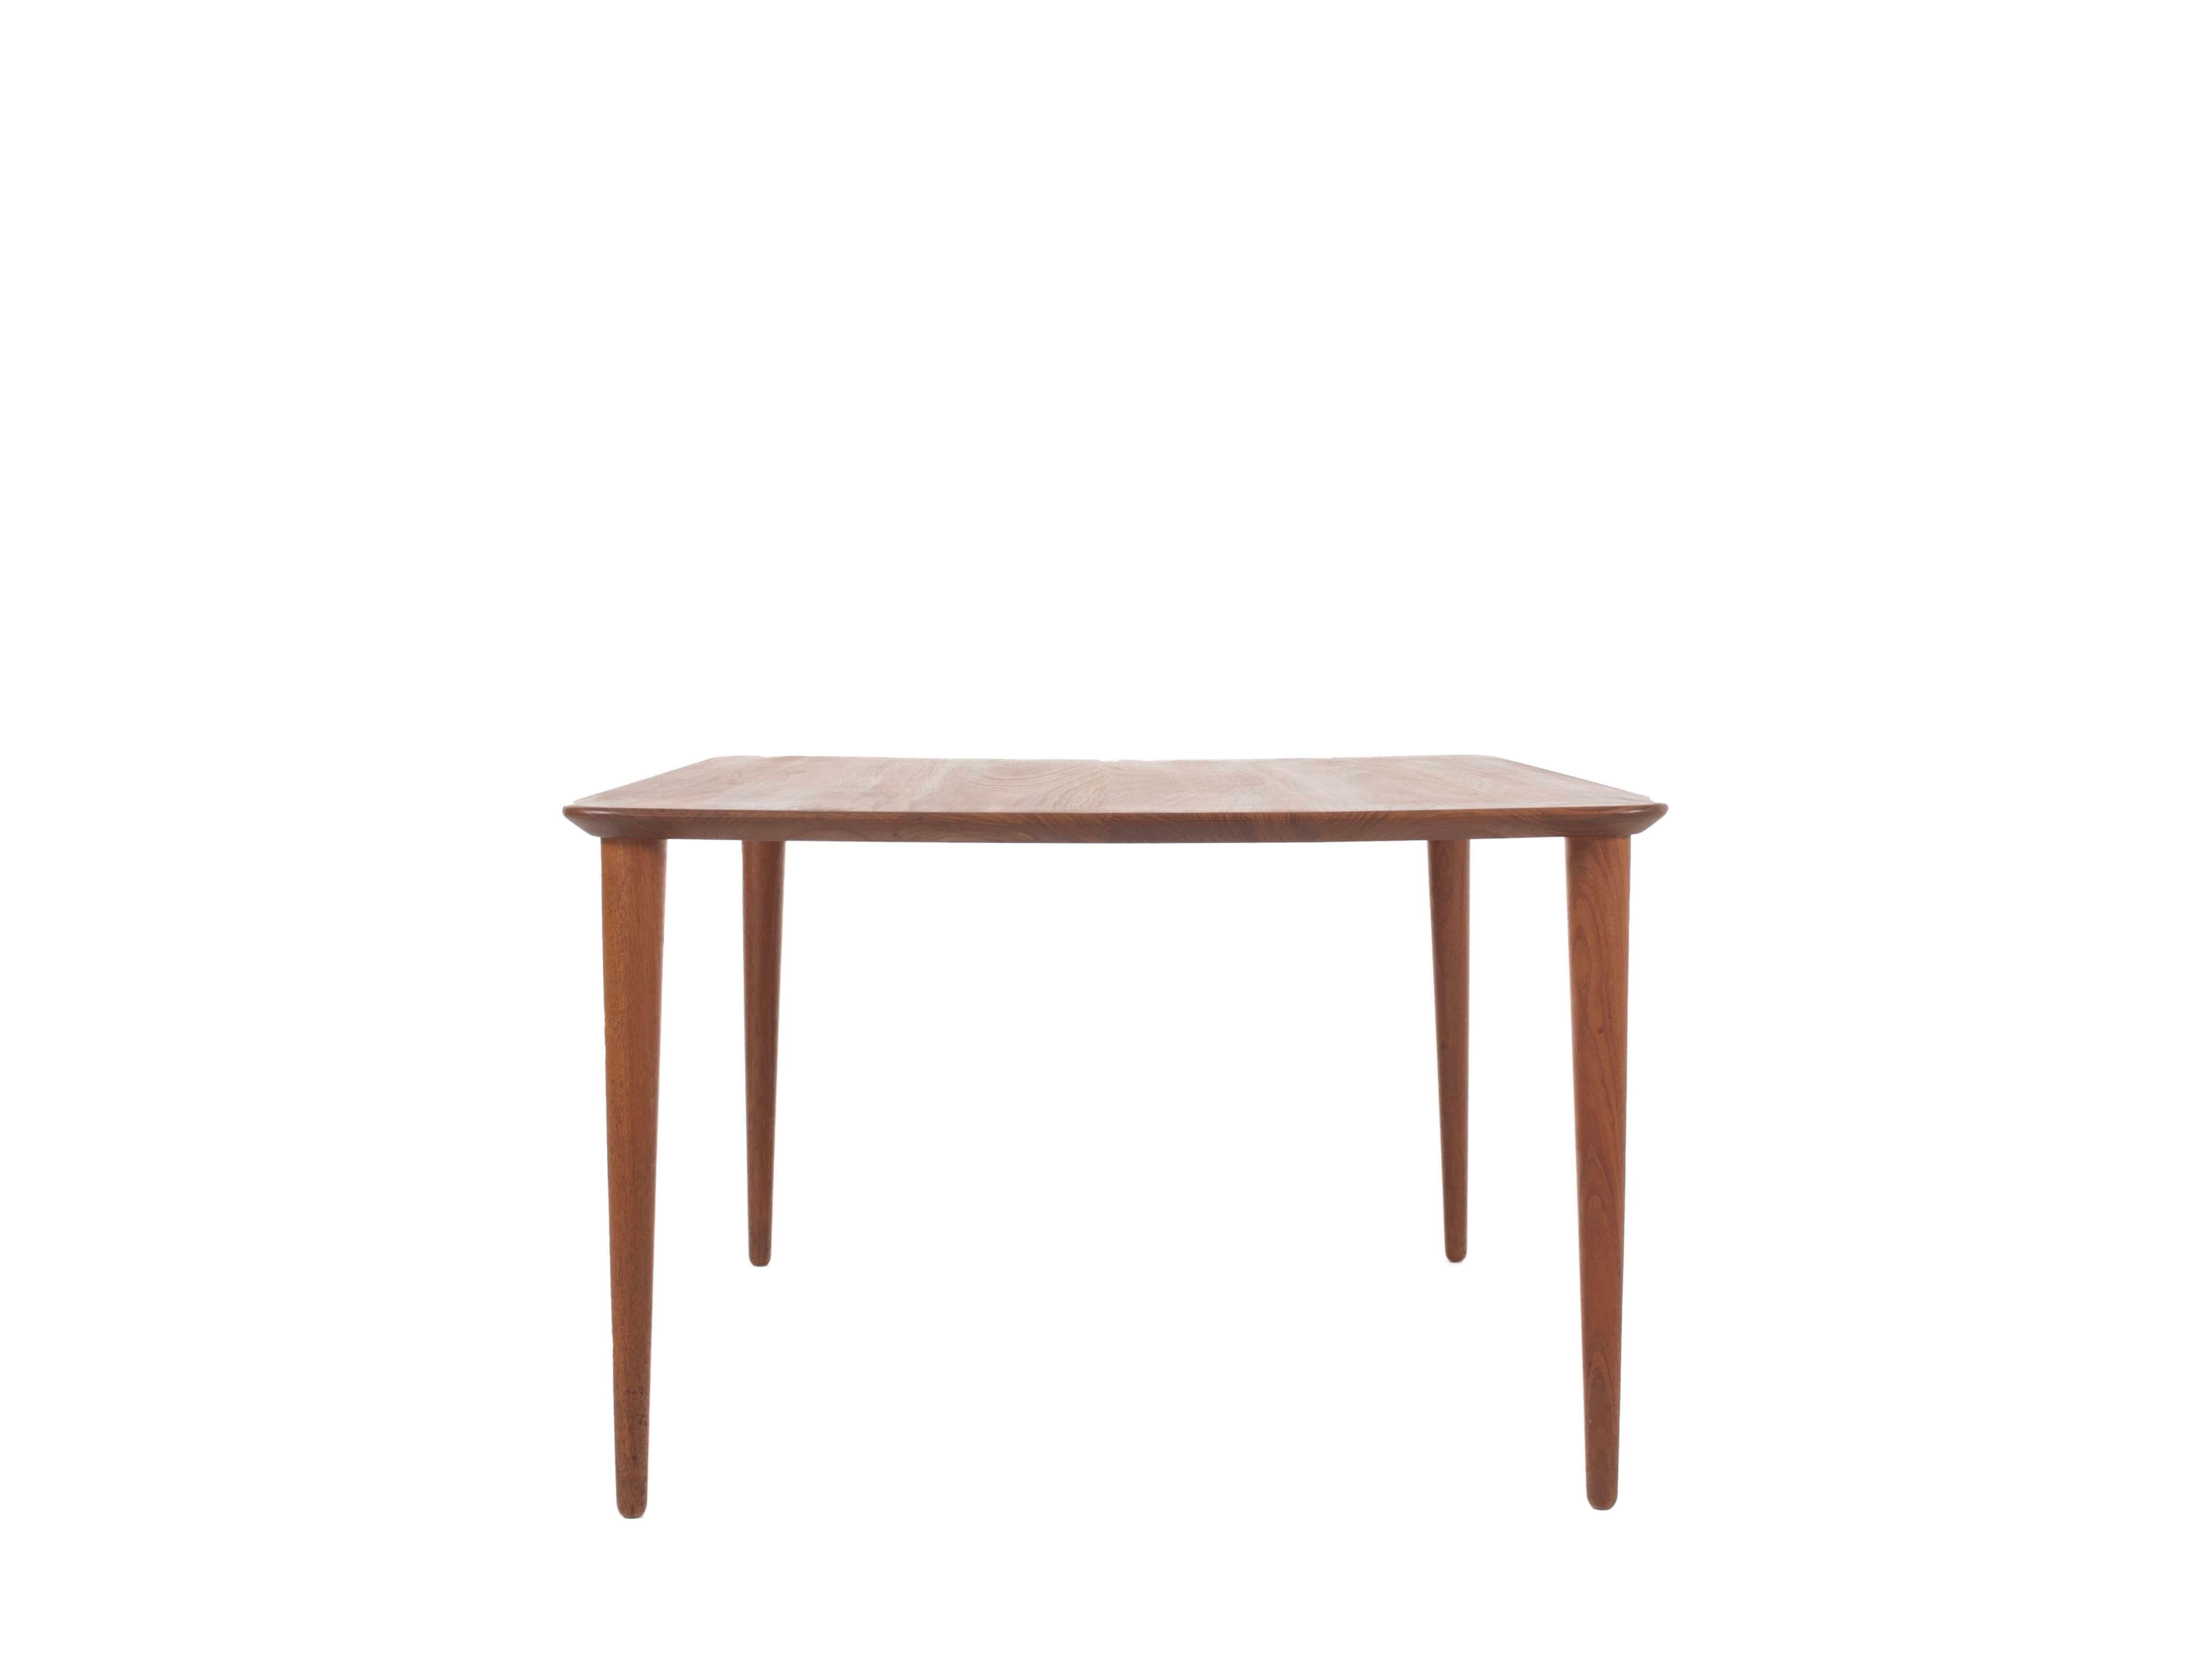 Belle table basse en teck de Peter Hvidt et Orla Mølgaard pour France & Son du Danemark des années 1960. Cette table a un design minimaliste, mais elle est élégante grâce à l'utilisation des bords arrondis et à la forme conique des pieds. Il est